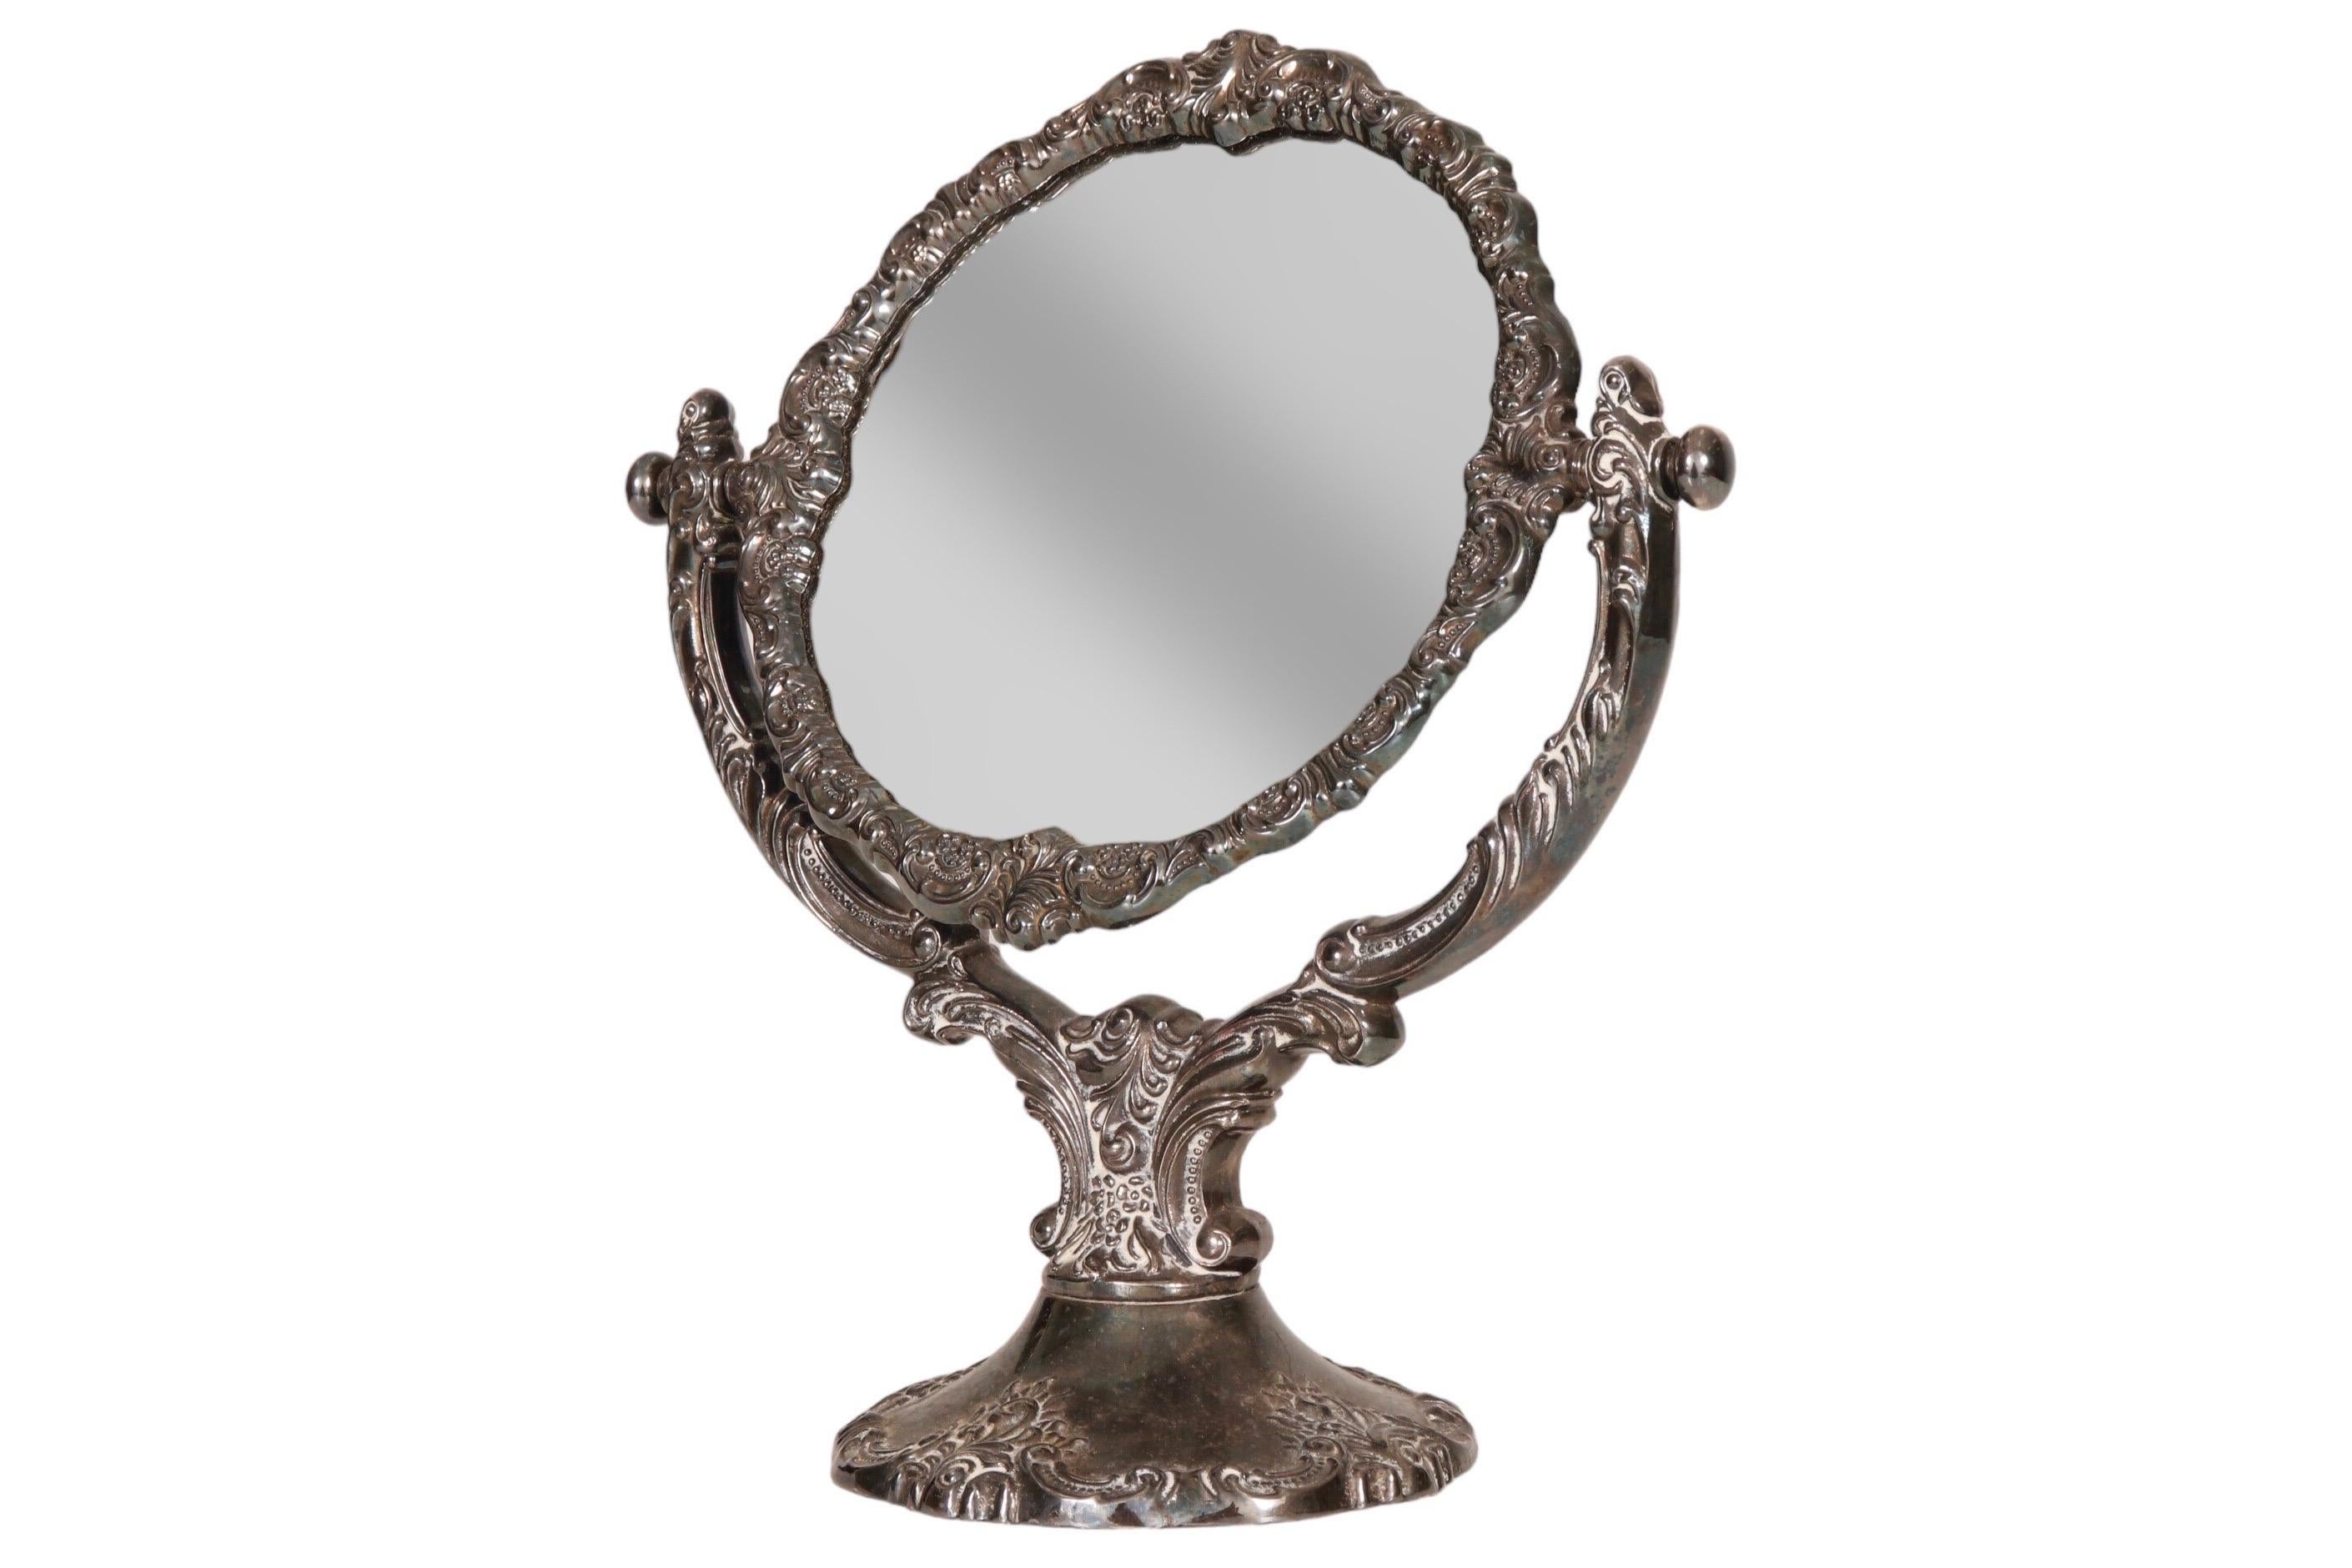 Miroir de courtoisie de style baroque en métal argenté des années 1940, fabriqué par Wallace. Un miroir rond est enchâssé dans un cadre ajustable élaboré, orné de volutes, de plumes et de perles. Le dos est recouvert de velours bleu.